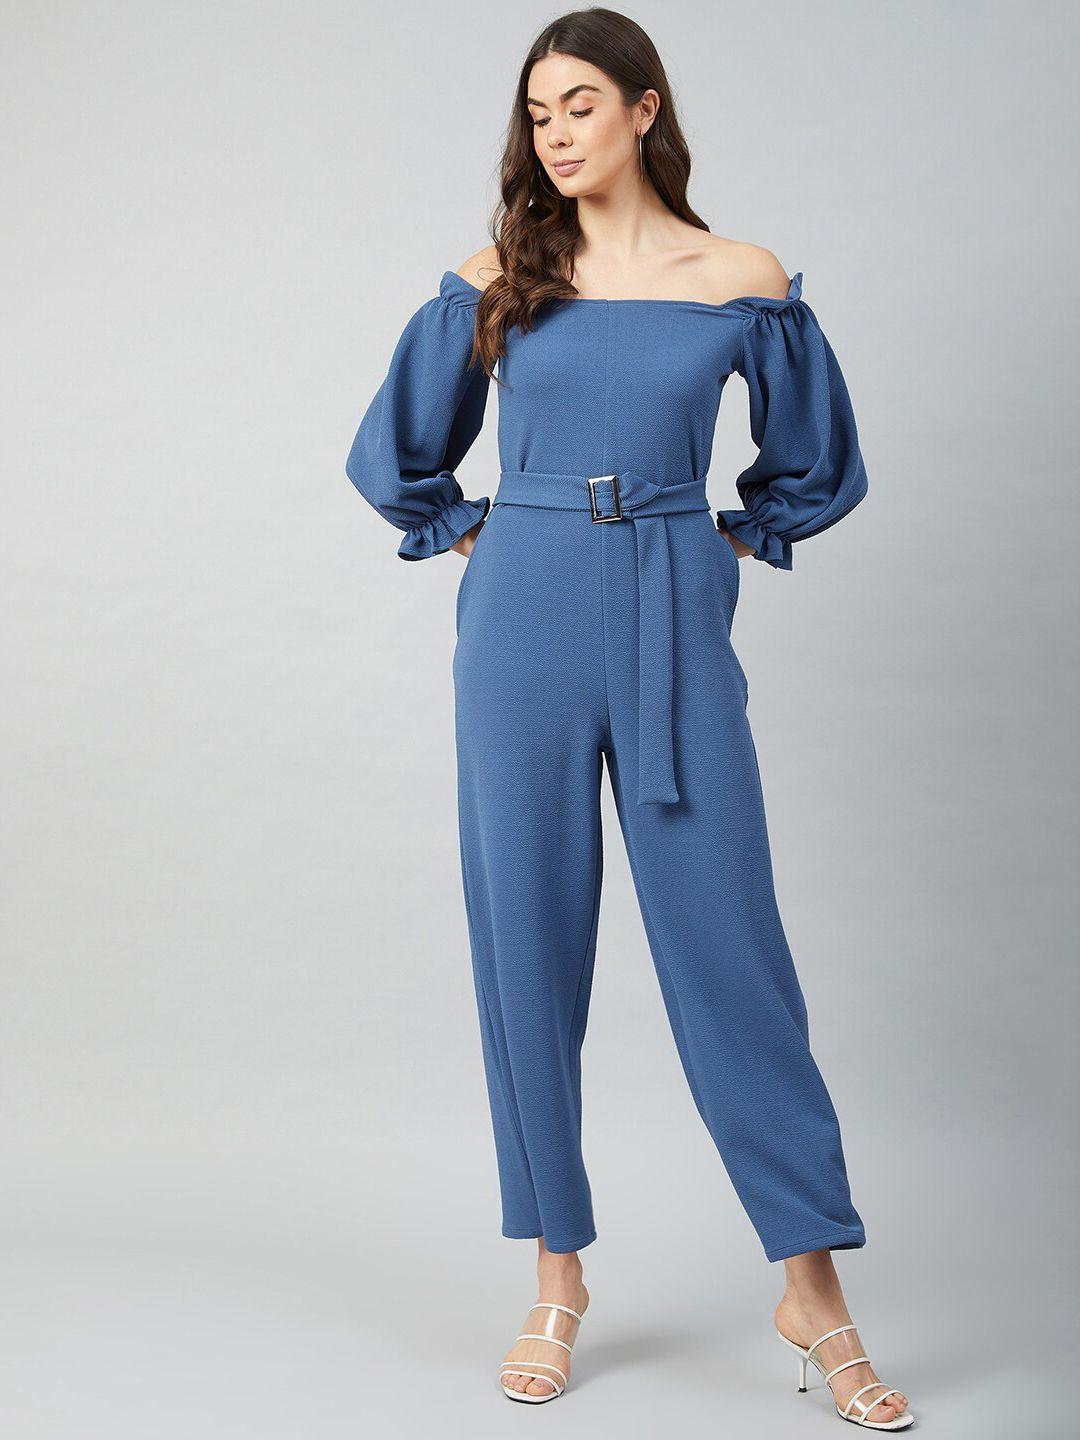 athena women blue solid jumpsuit